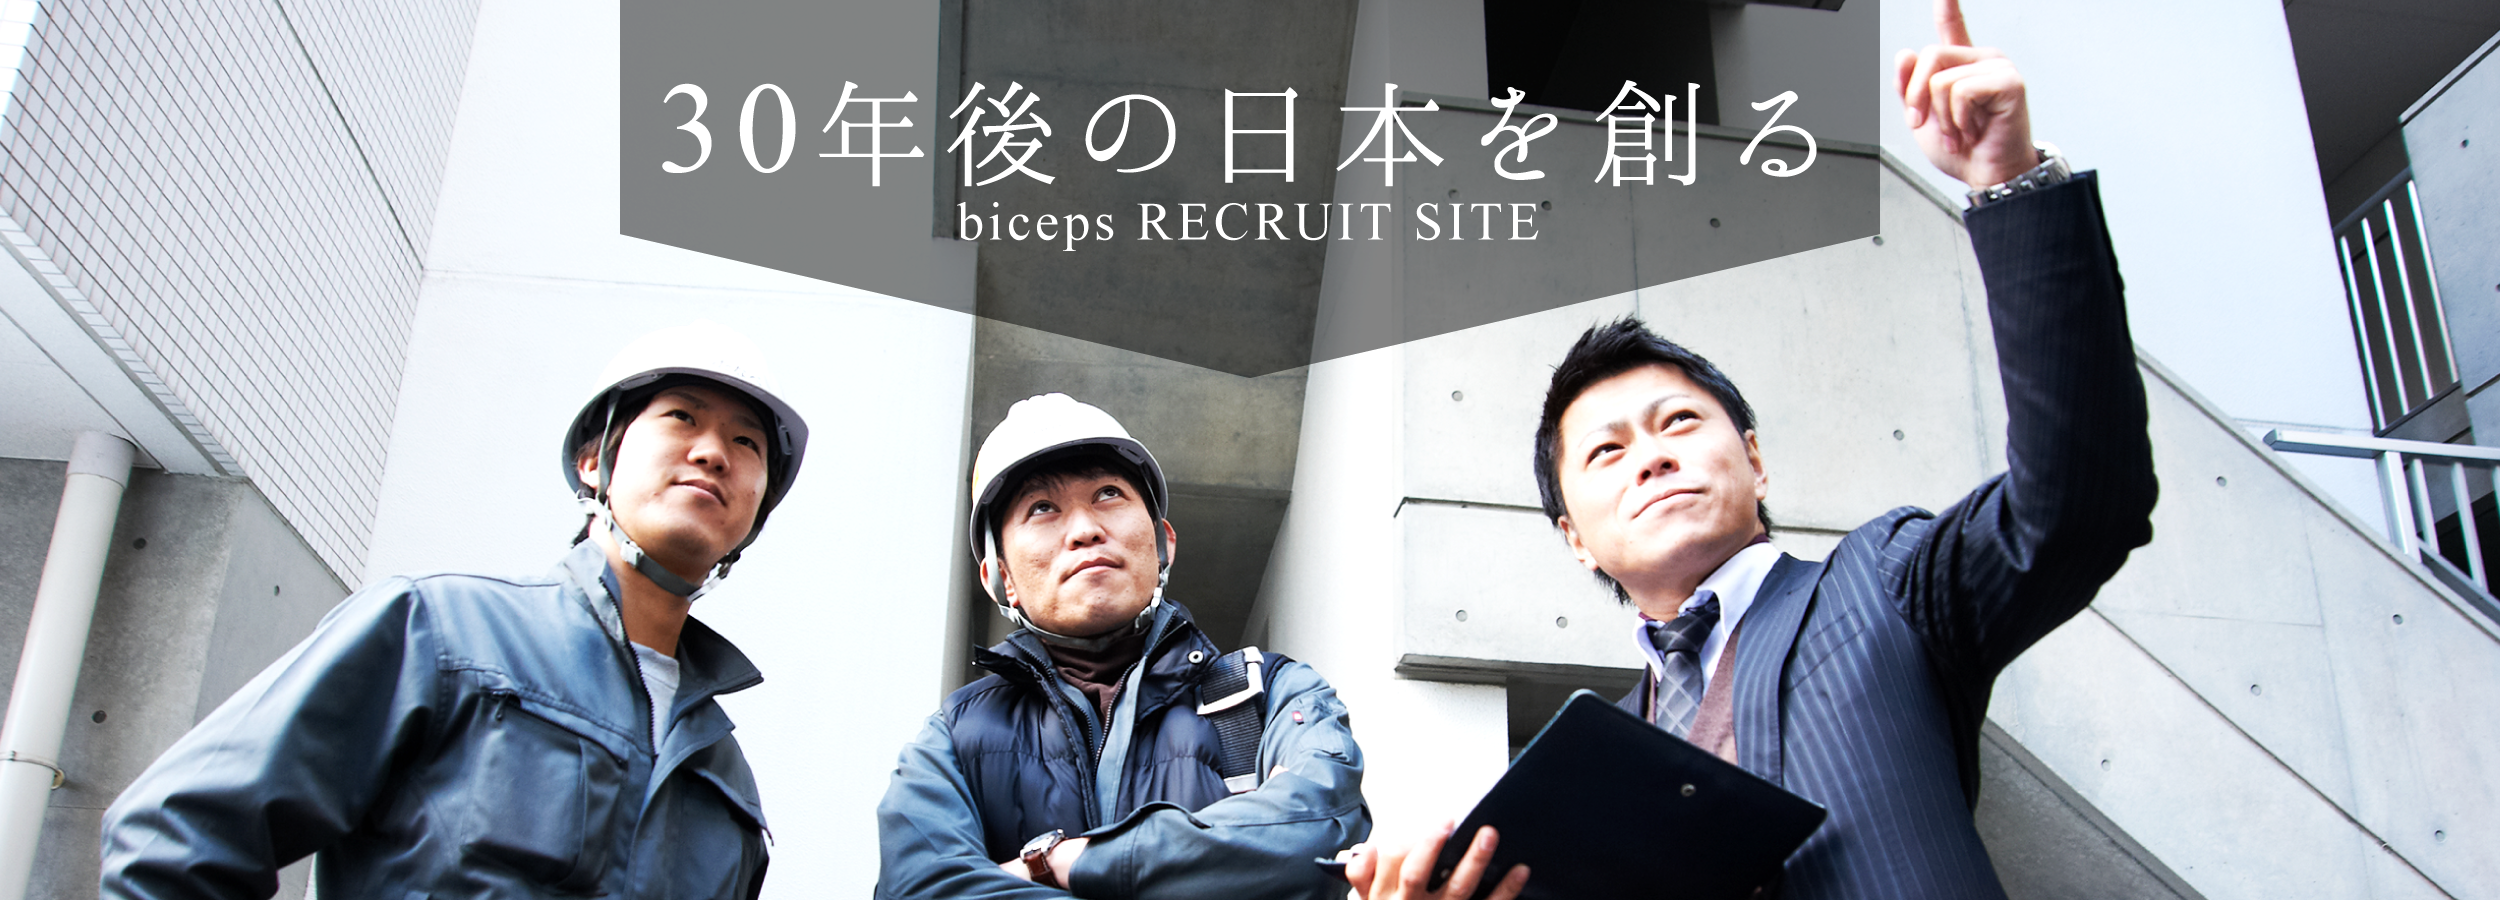 株式会社バイセップス【公式】アルバイト・社員求人サイト